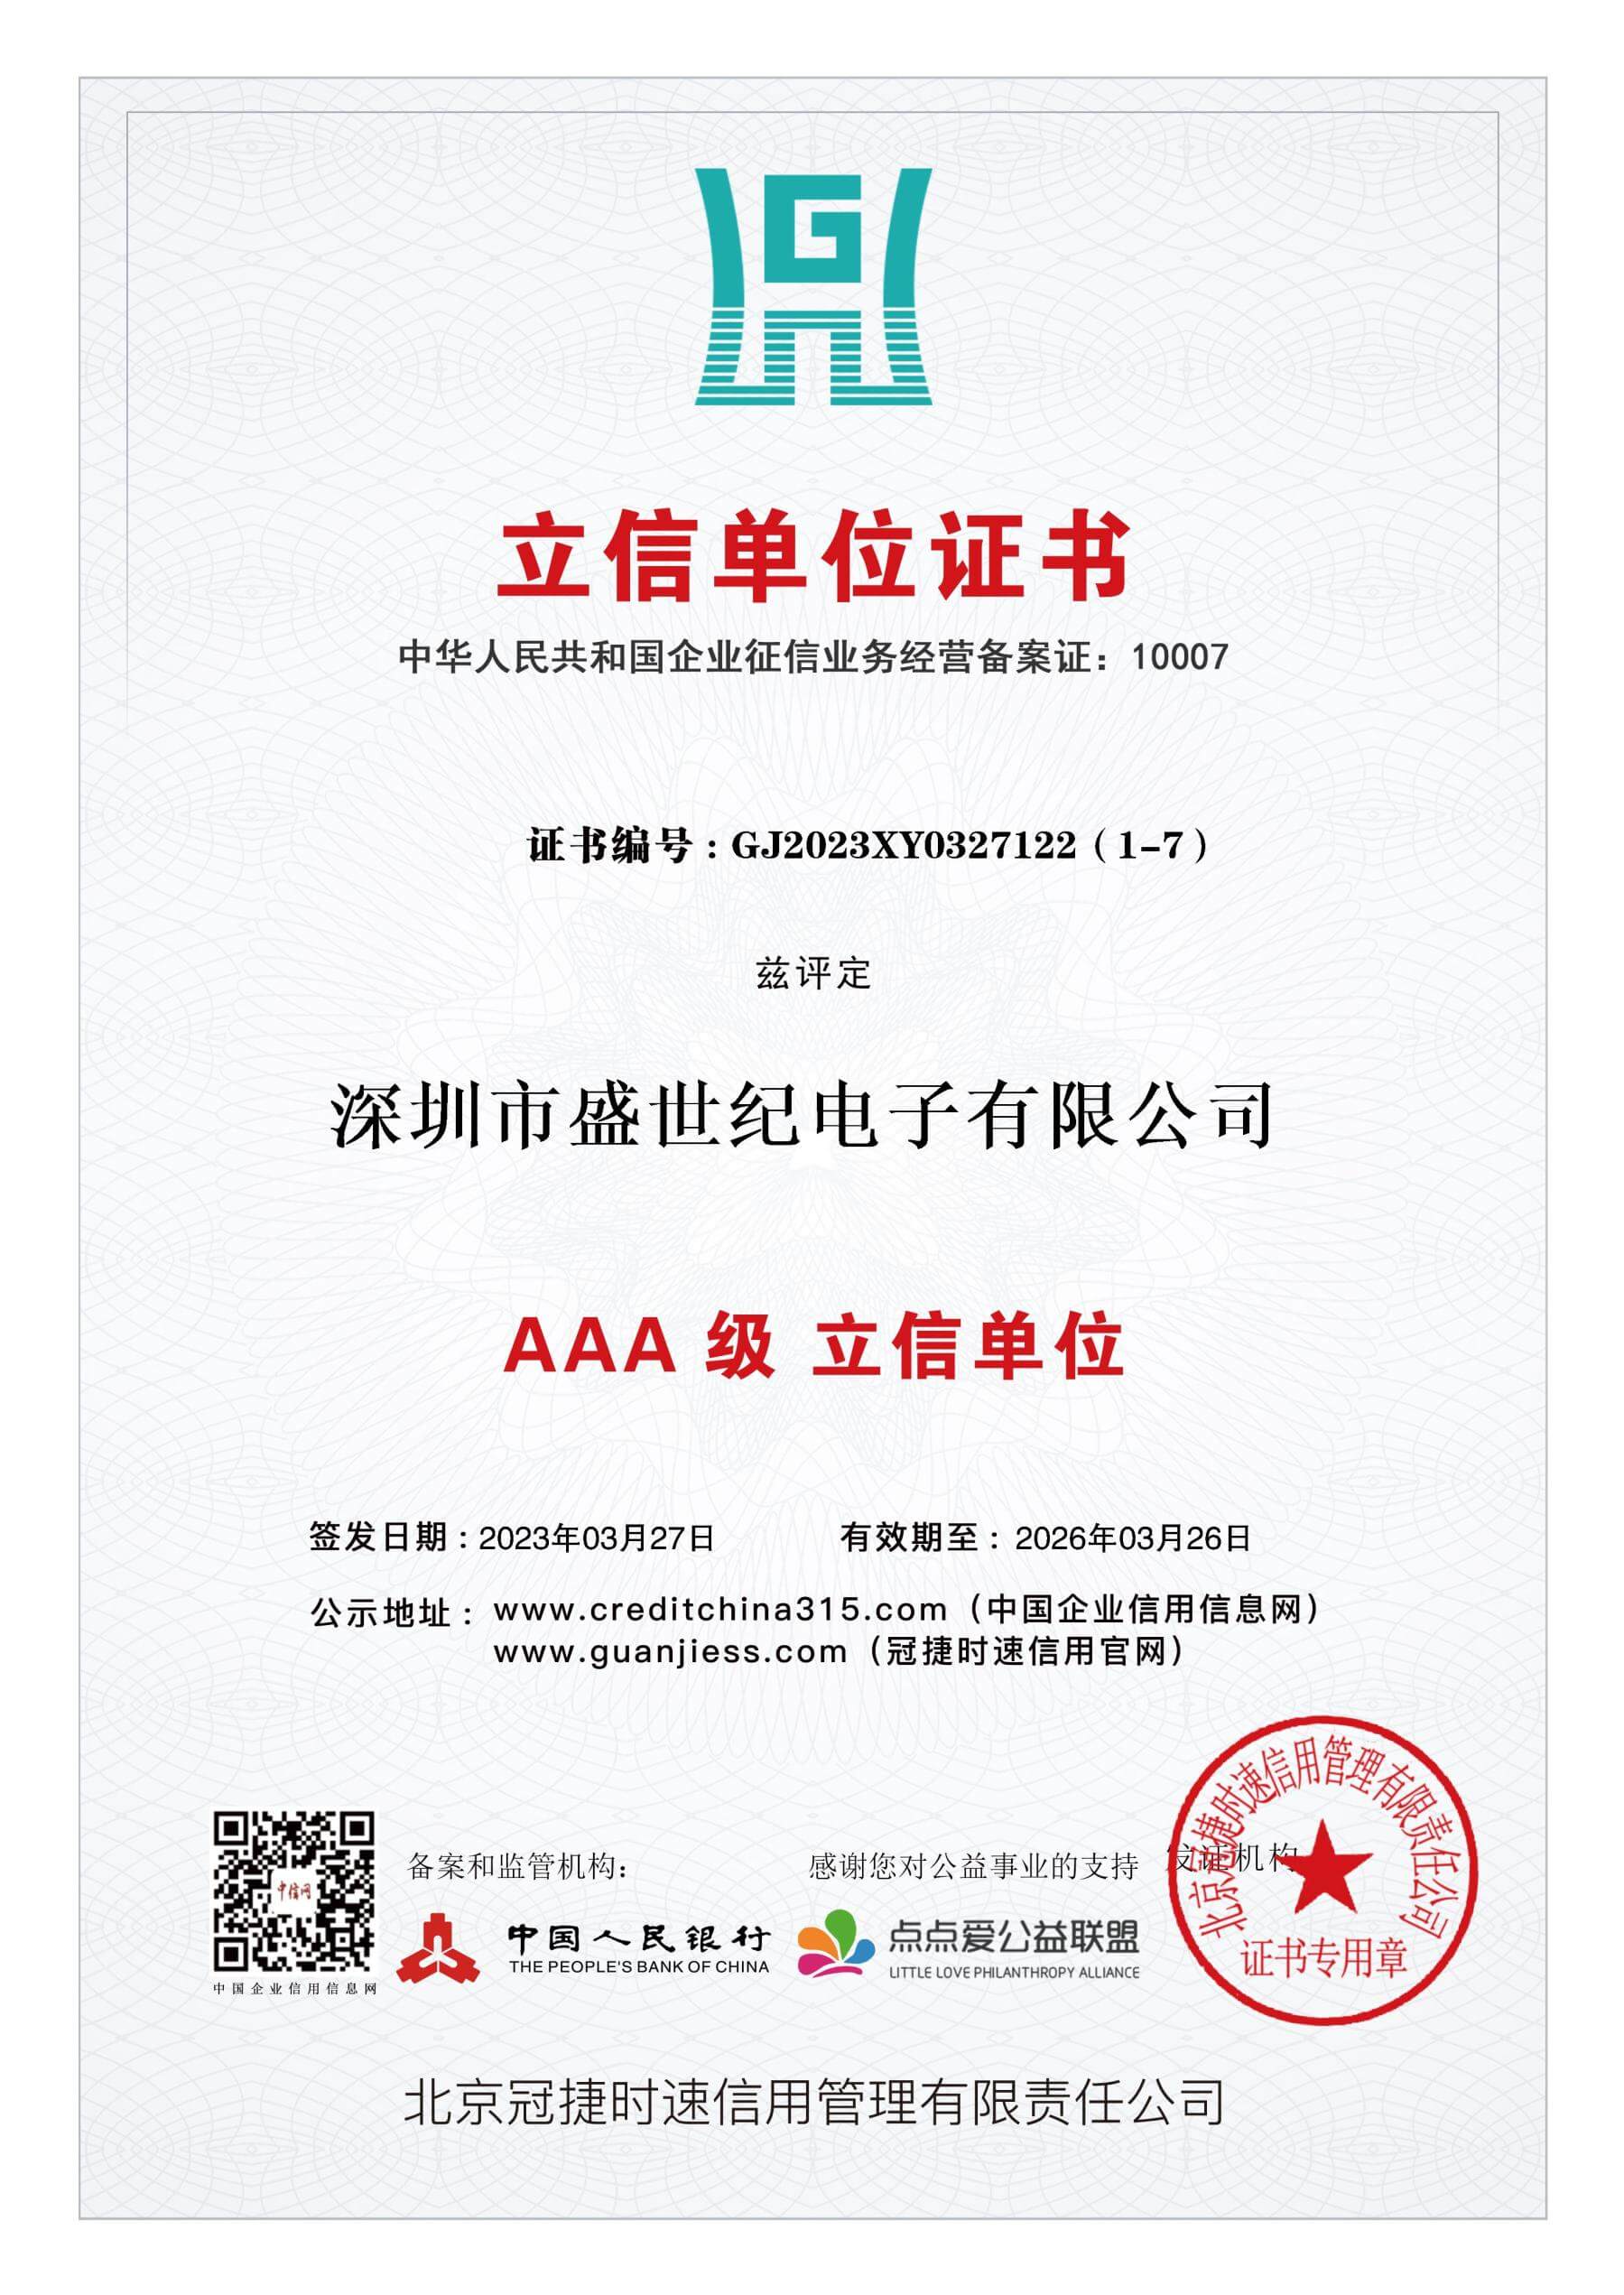 letter unit certificate